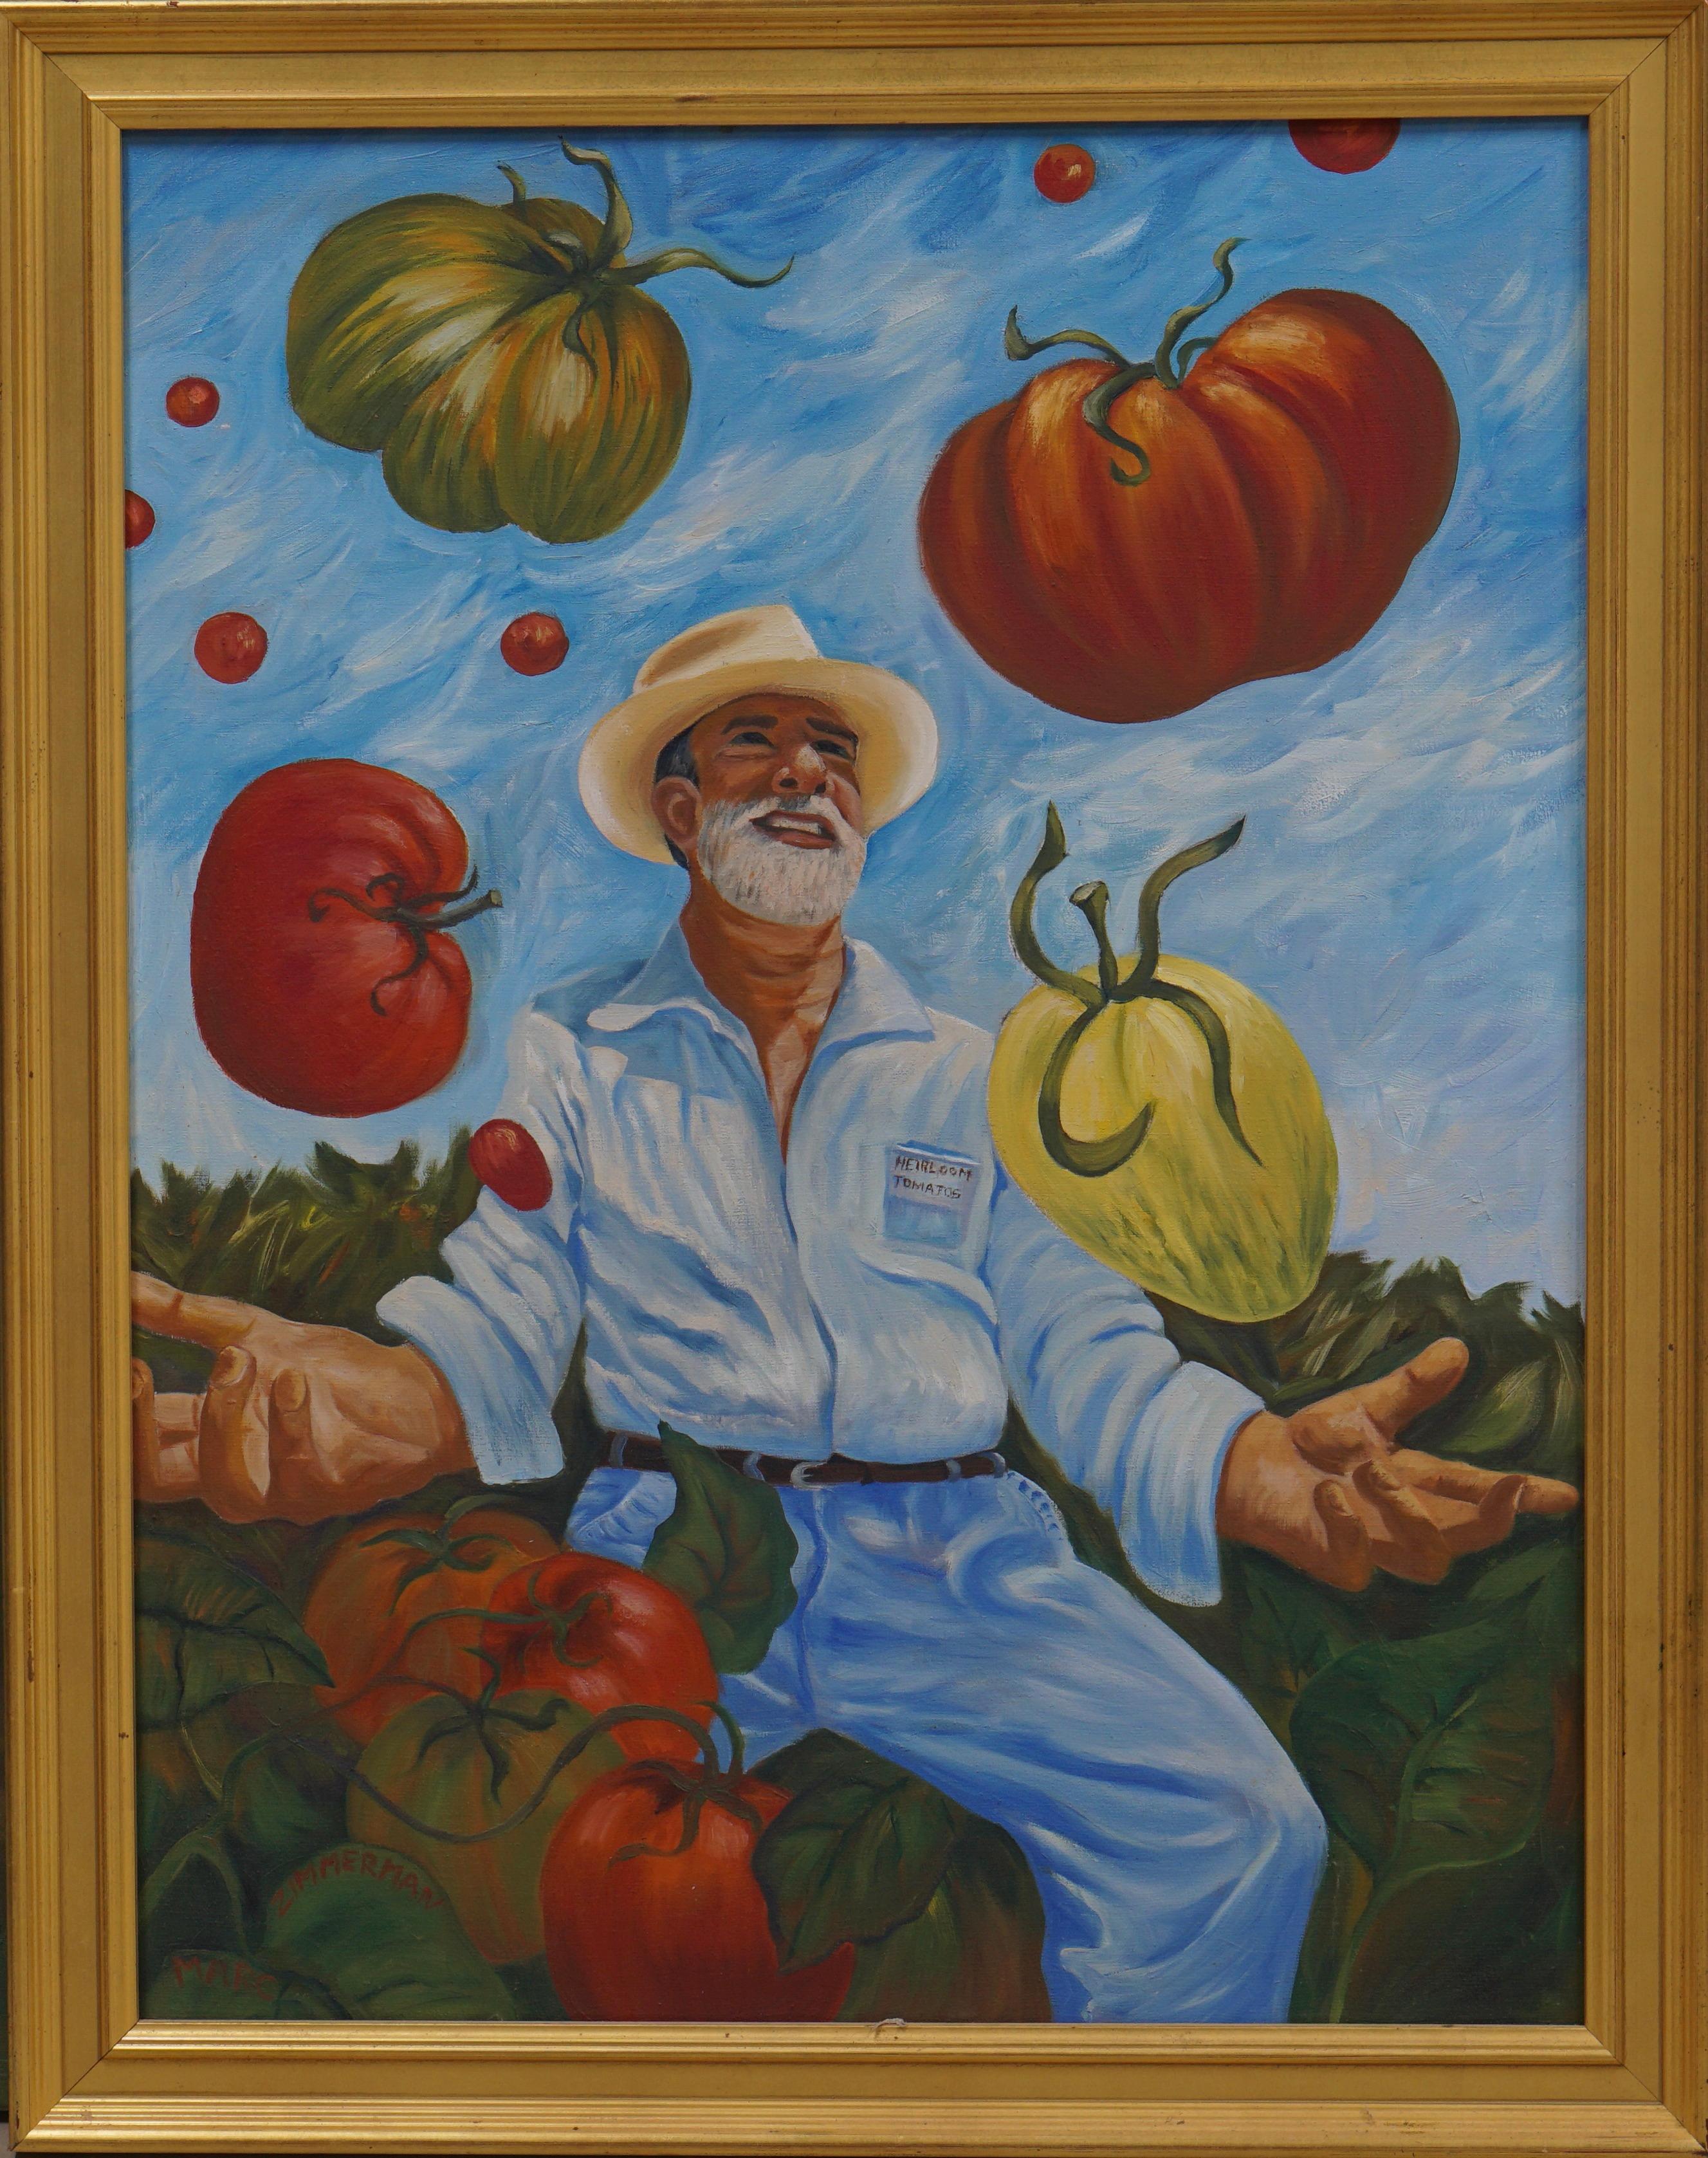 Niemand konnte erfolgreich mit Tomaten jonglieren, außer Gary, einem der Begründer der Heirloom-Tomaten. Hier ist seine Freude grenzenlos, denn er spielt auf wundersame Weise mit seinem Essen. (Der Künstler gibt zu, dass er sich bei diesem Bild ein